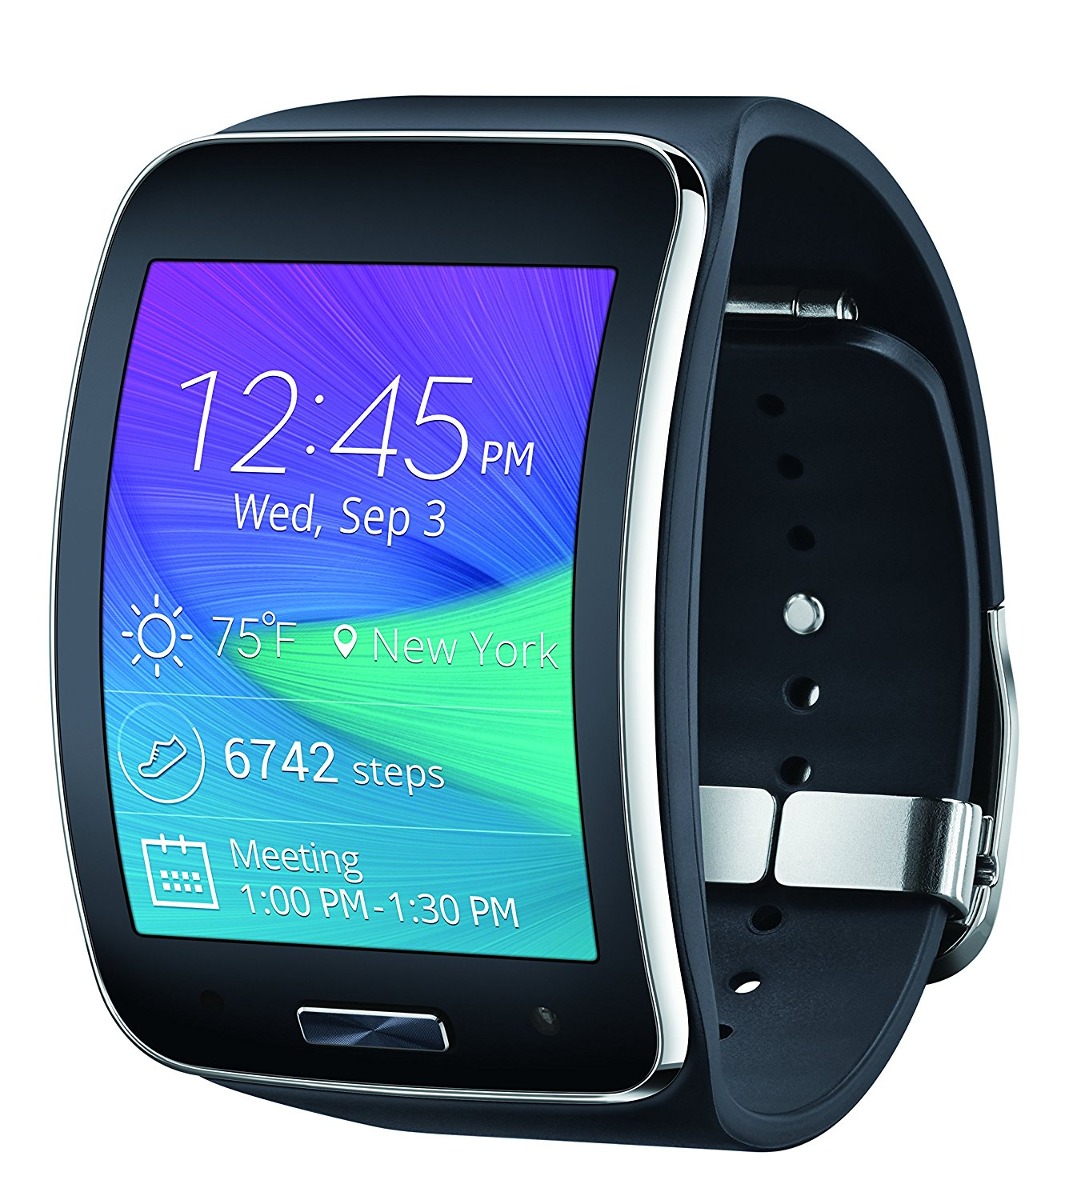 Relógio Samsung Galaxy Gear S Smartwatch 3g Wifi R 2.639,40 em